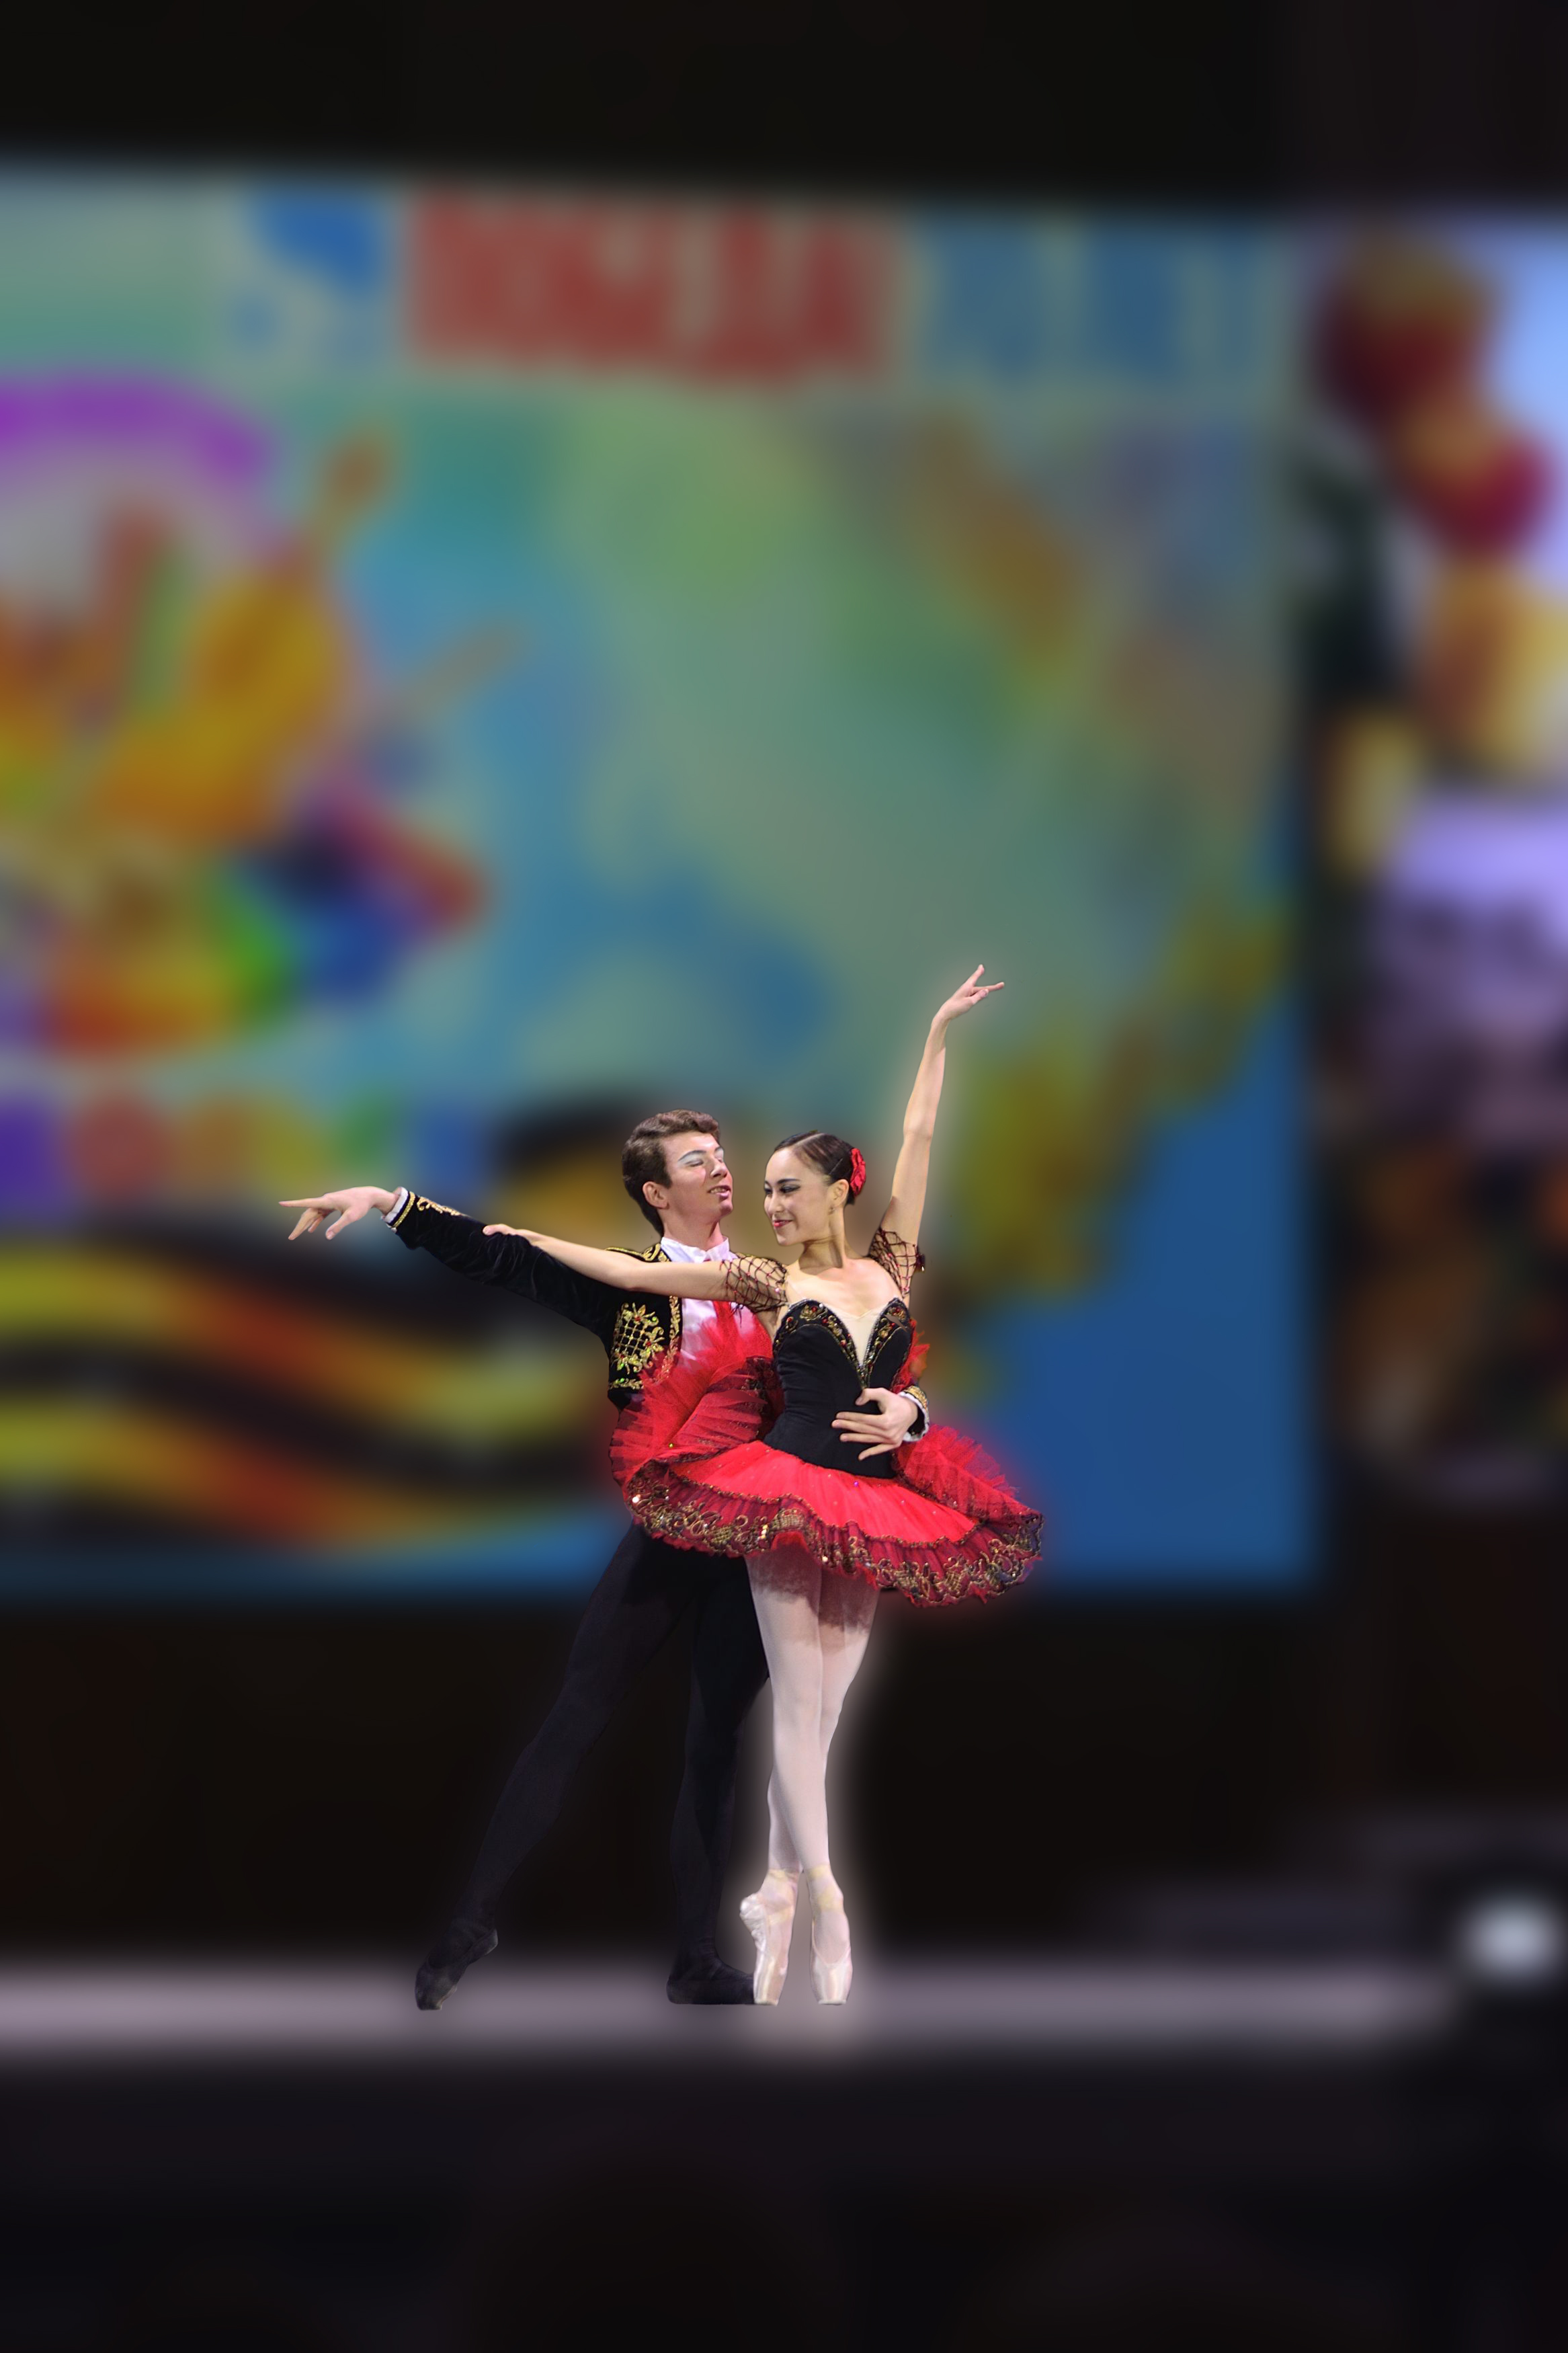 ballet ruso